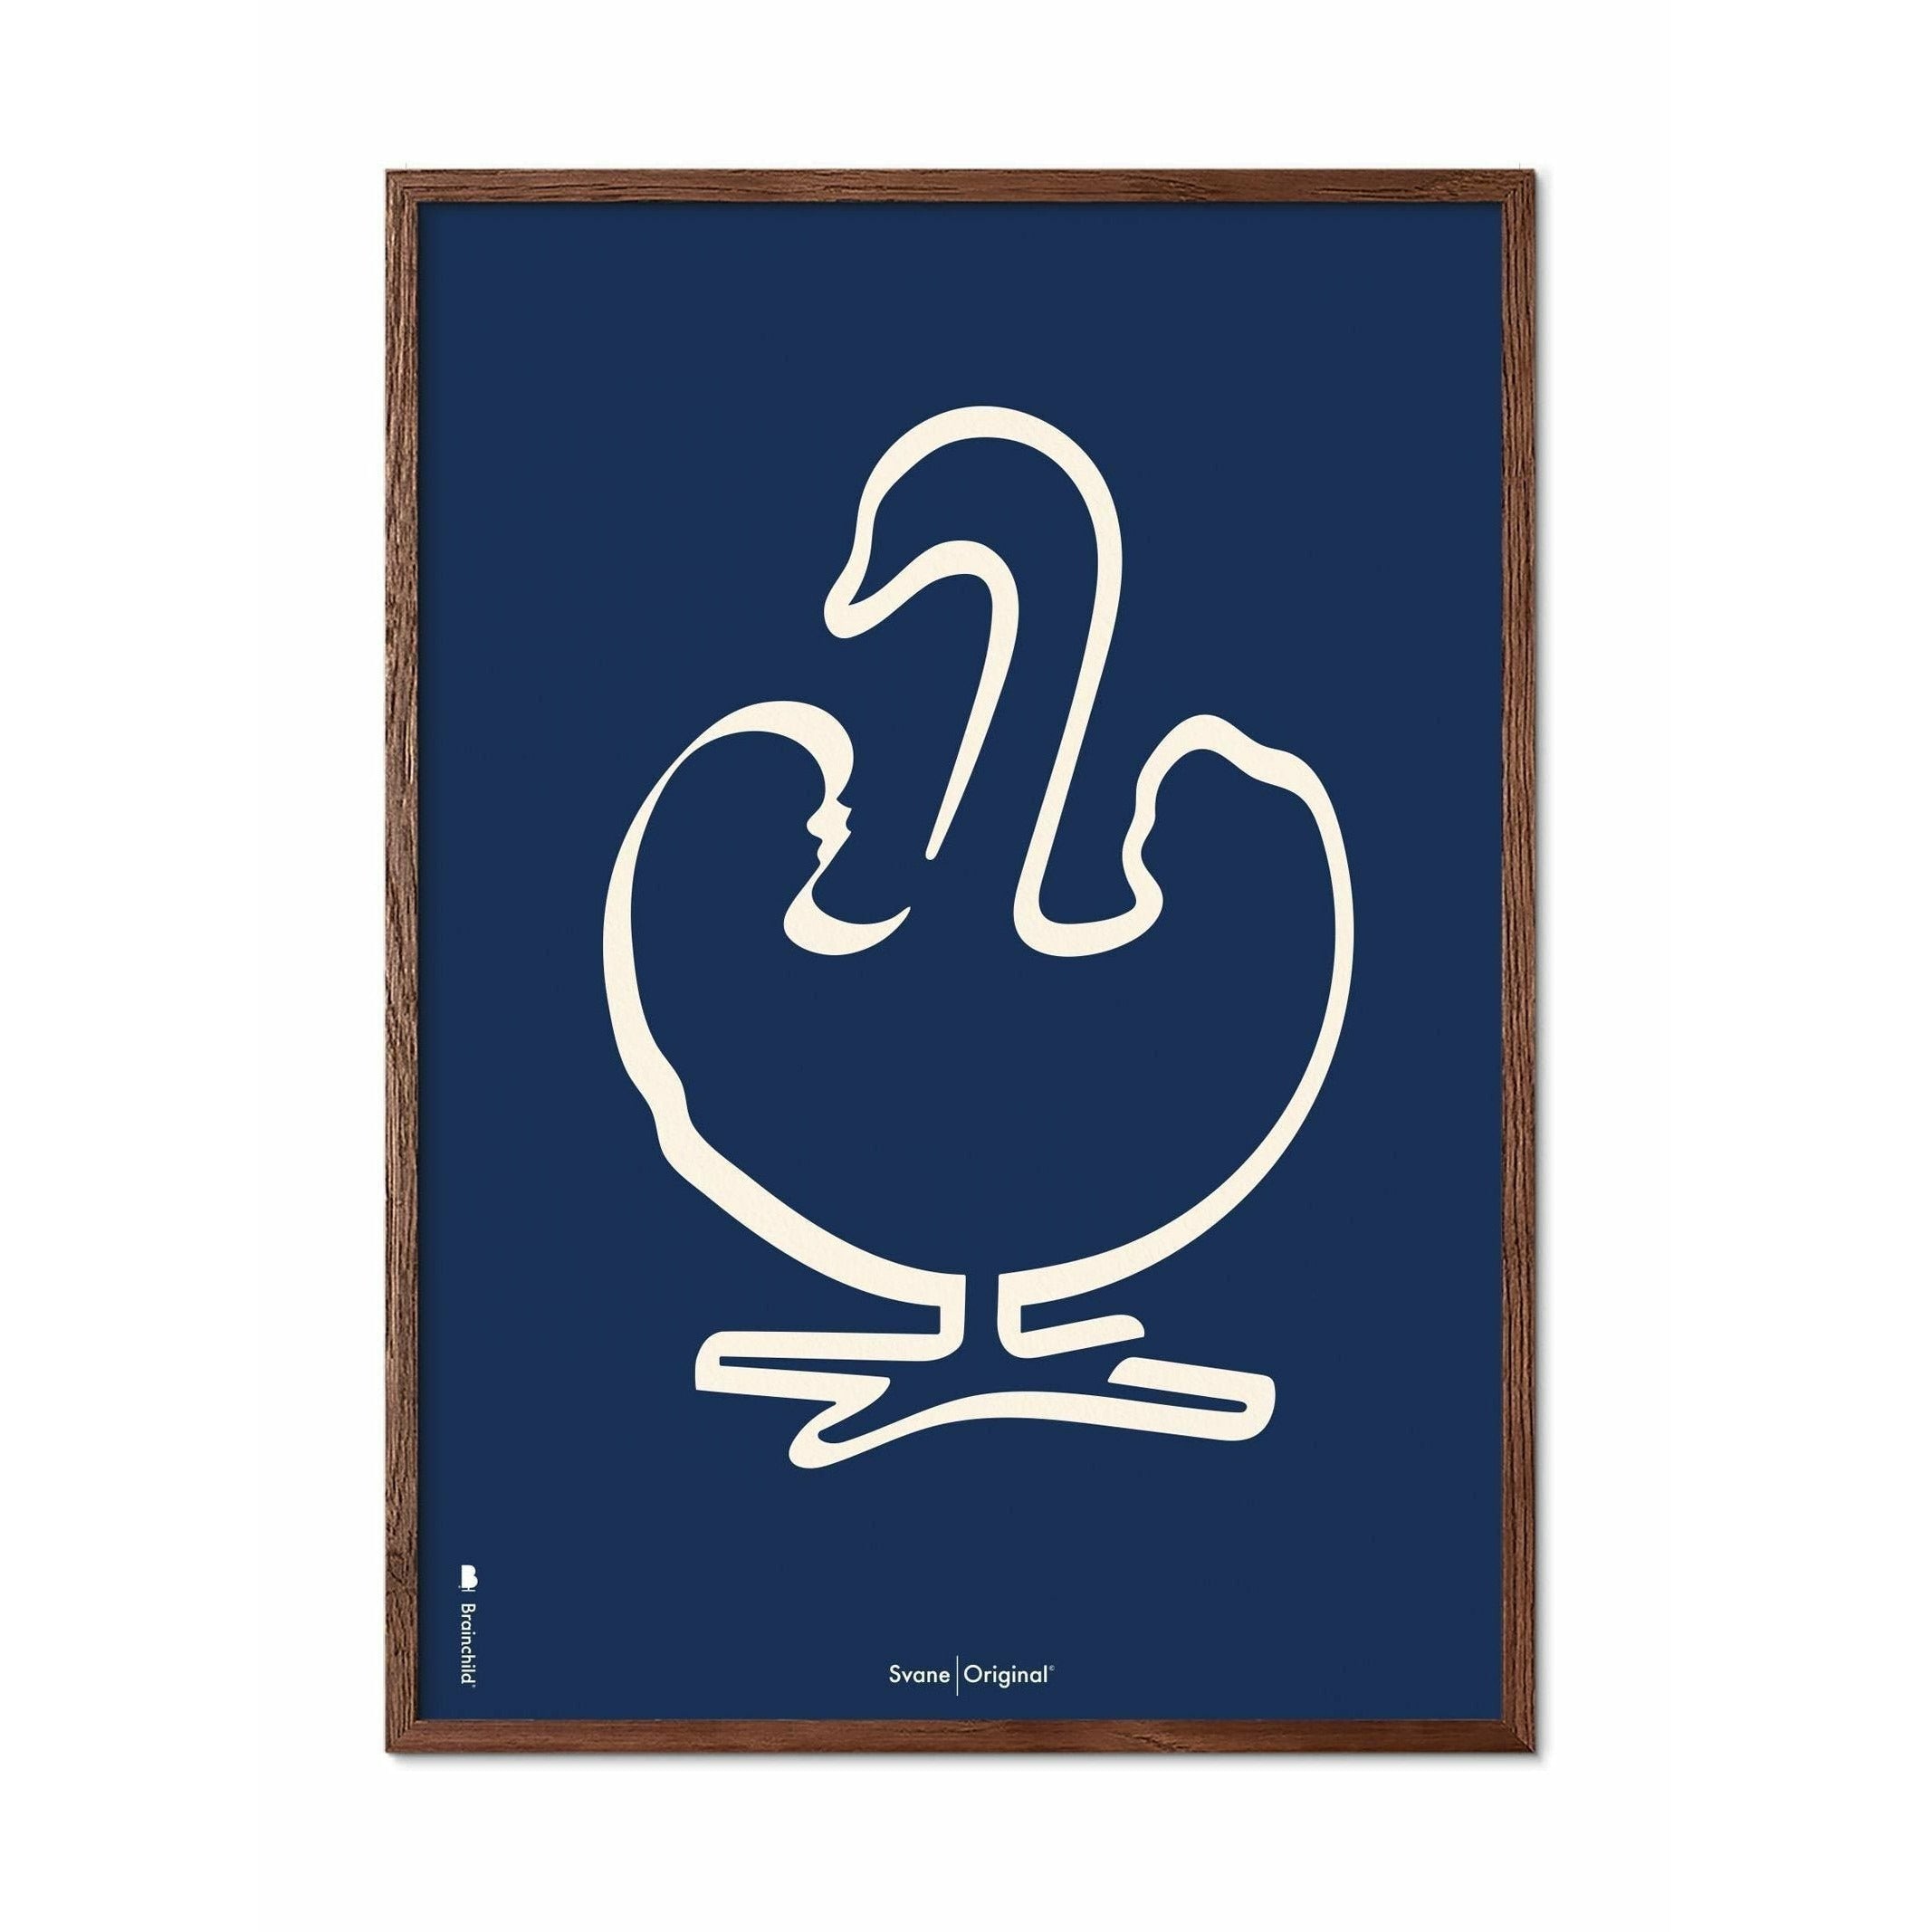 Póster de línea Swan de creación, marco hecho de madera oscura 50x70 cm, fondo azul